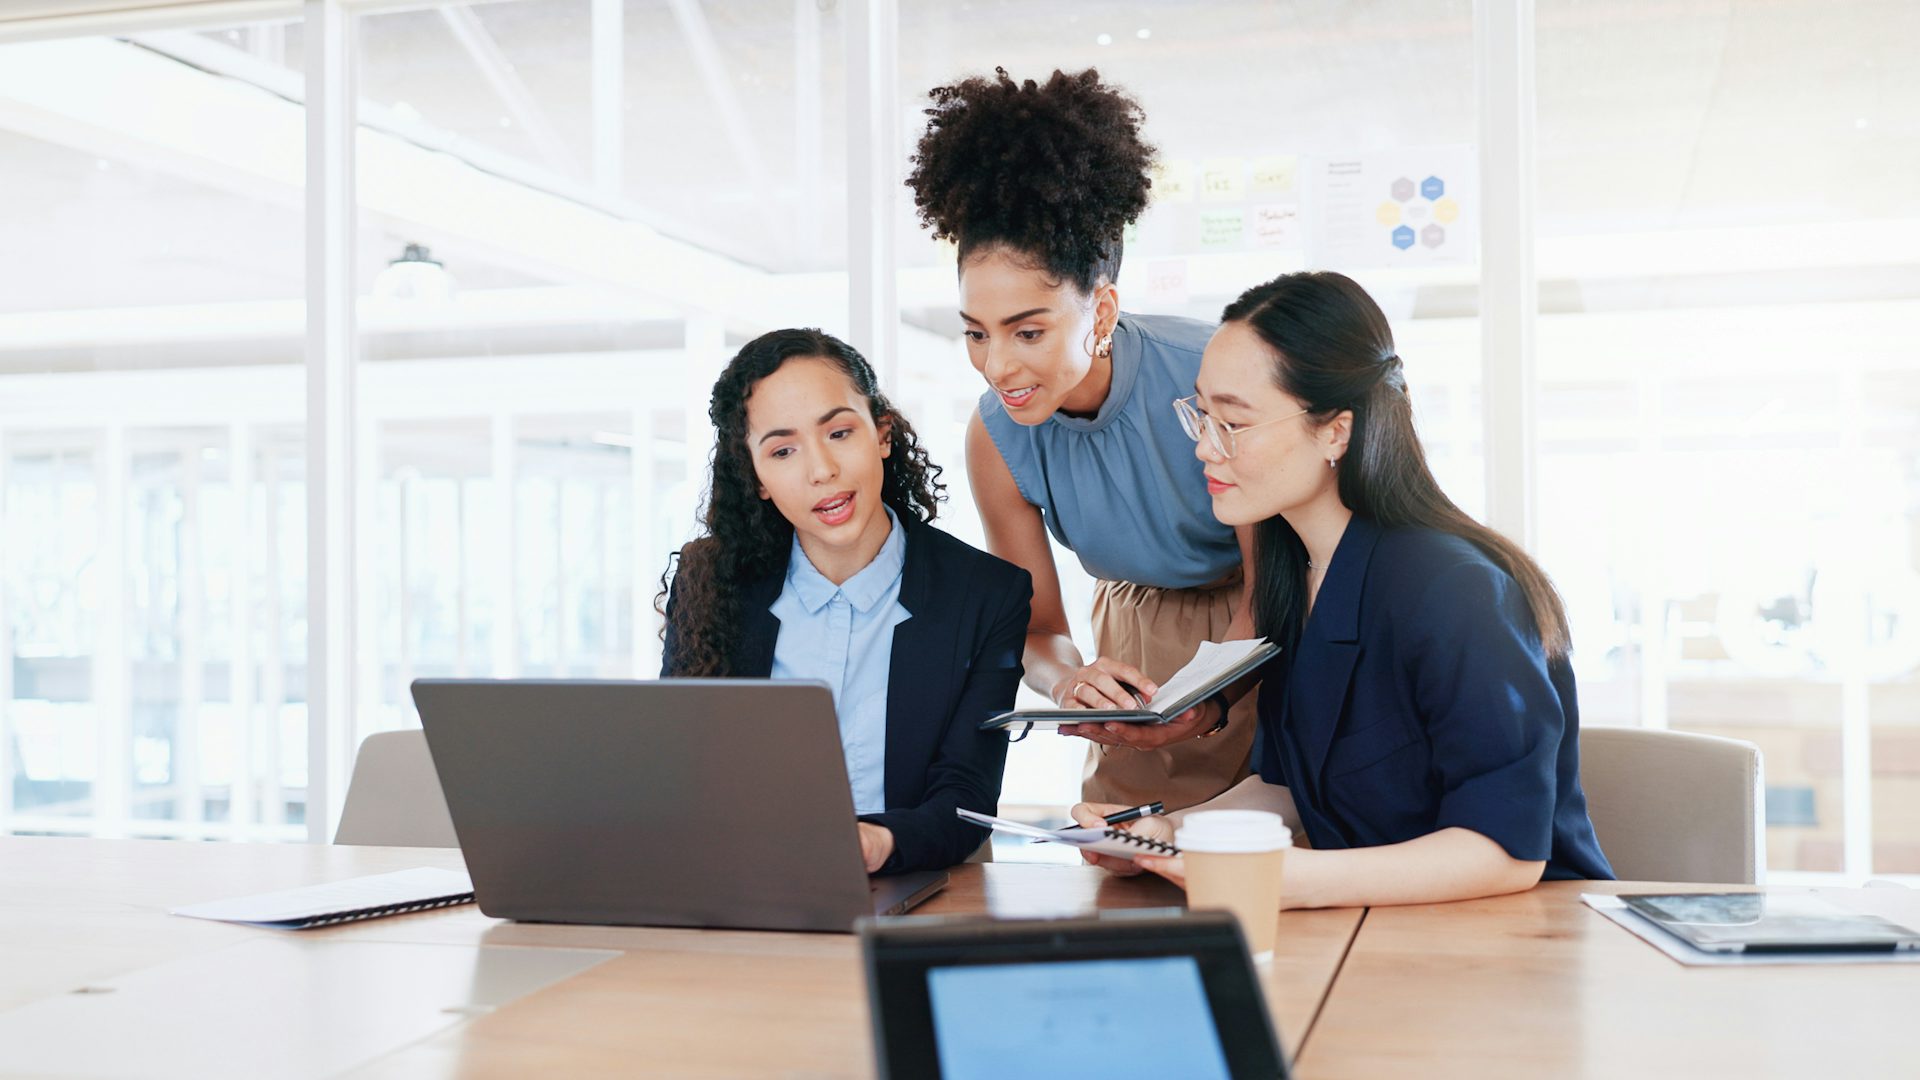 オフィスでパソコンで共同作業する3人の女性。